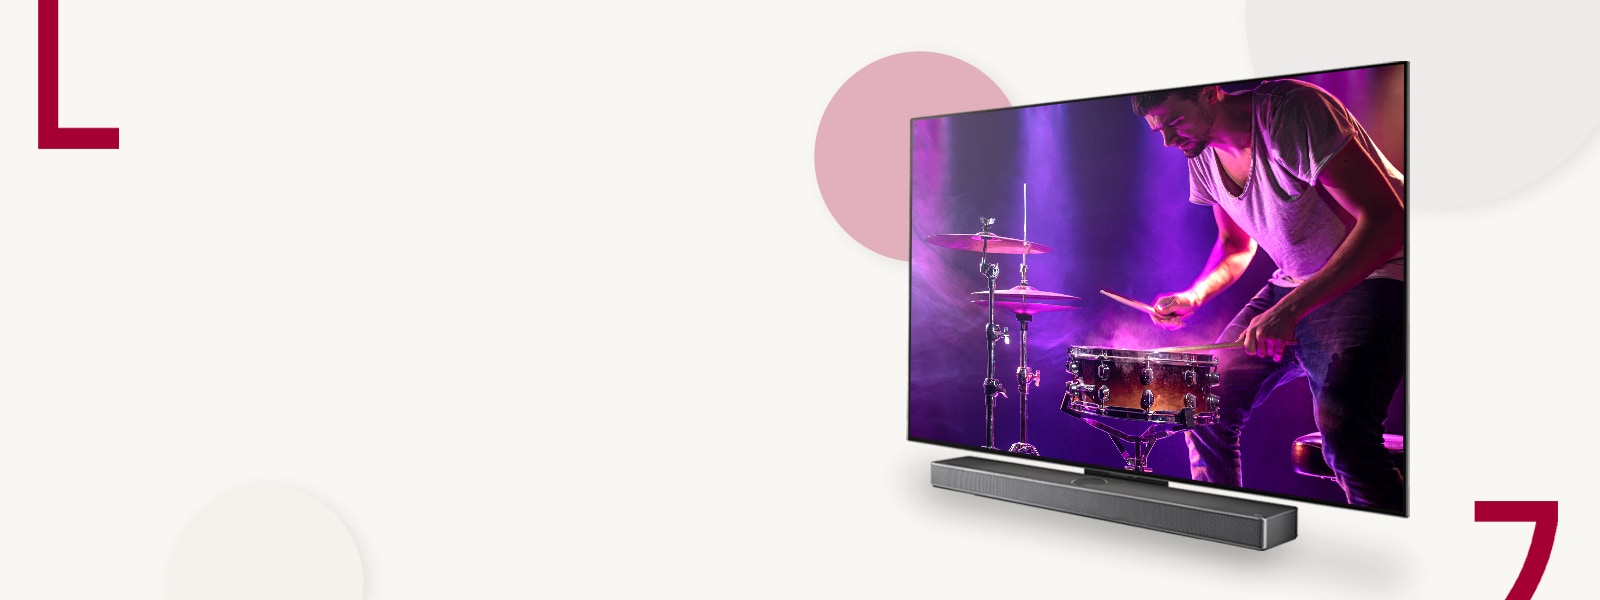 Slika LG OLED C3 i Soundbar zvučnika na kremastoj pozadini sa obojenim krugovima. Na ekranu je muškarac koji svira bubnjeve. 